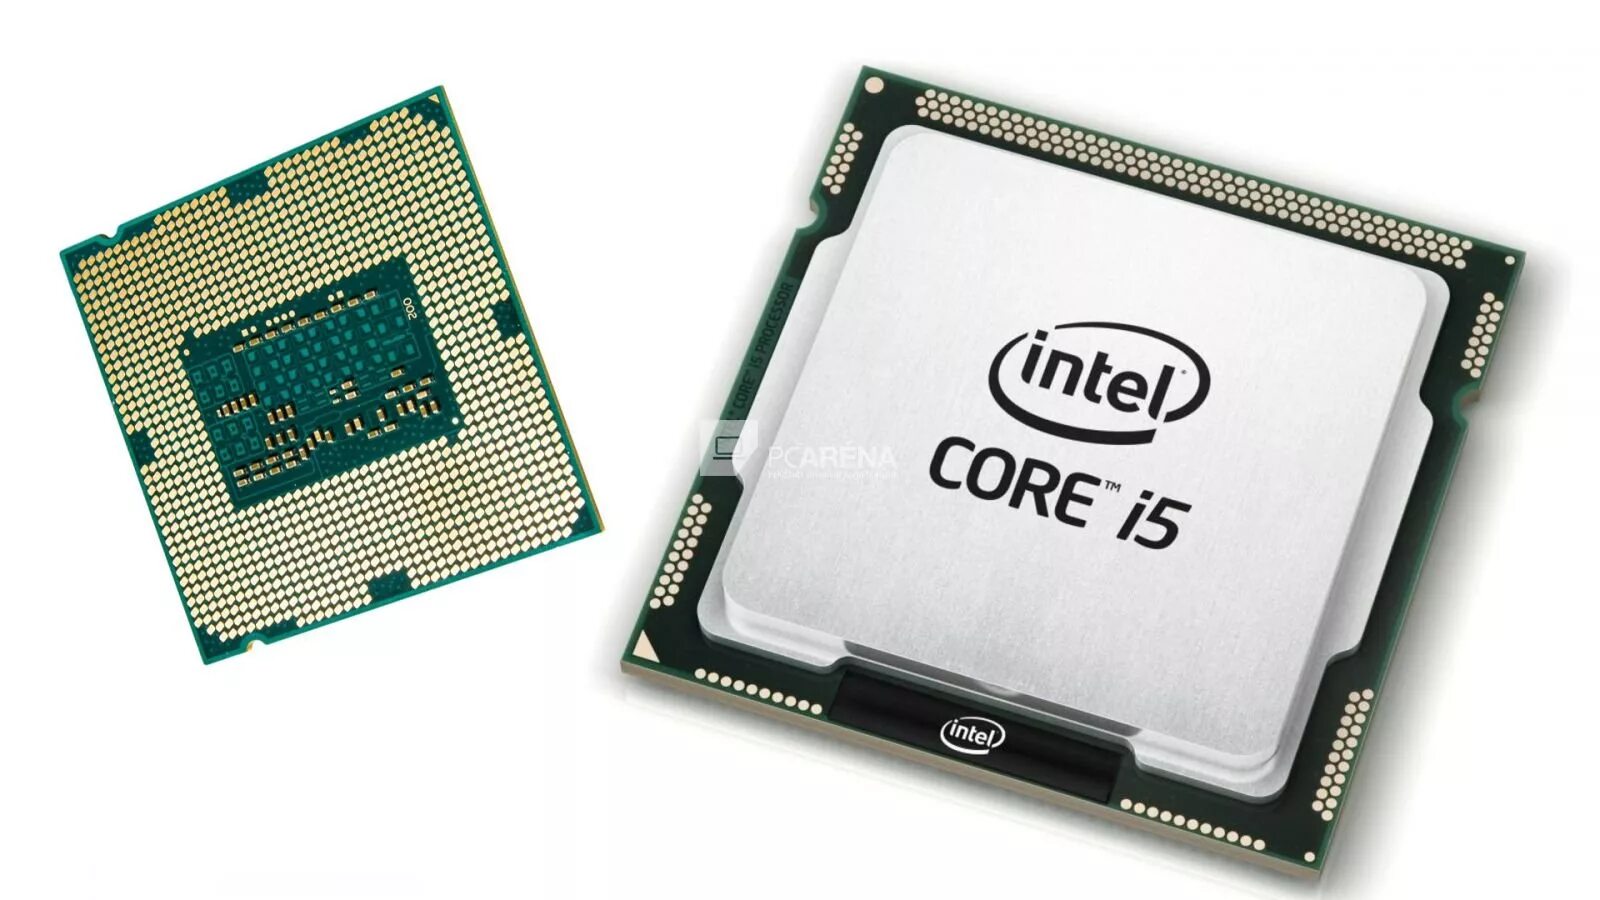 Процессор Intel Core i5 2400. Процессор Intel Core i5 inside. Intel Core i5 2400 сокет. Процессор Intel Core i5 5500. Модель процессора core i5